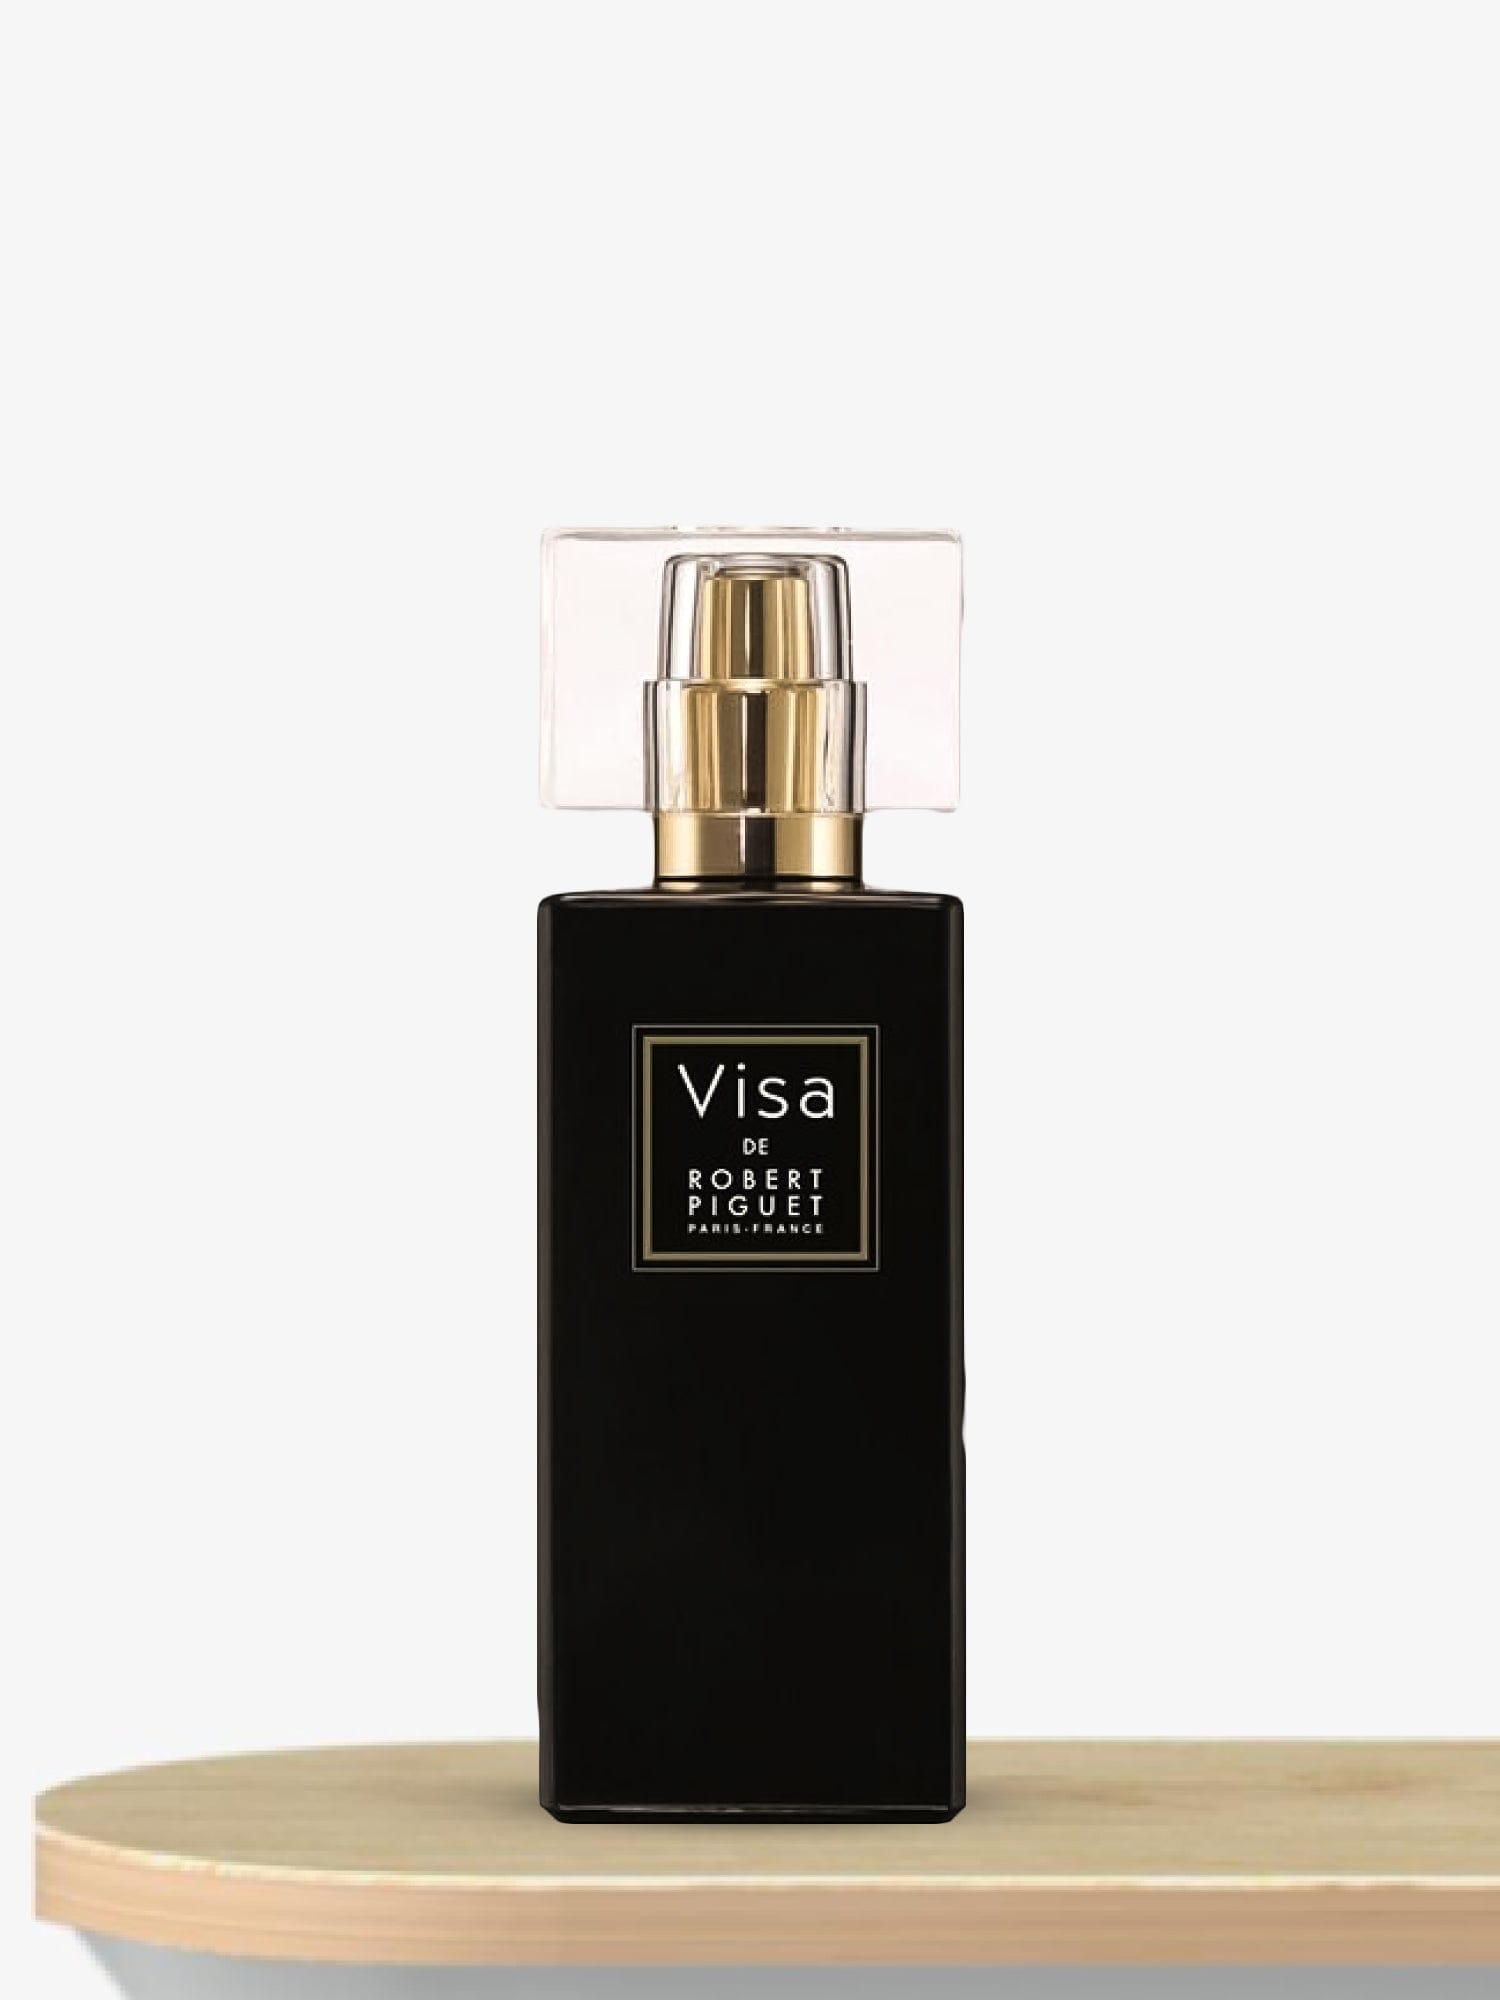 Robert Piguet Visa Eau de Parfum 100 mL / Female